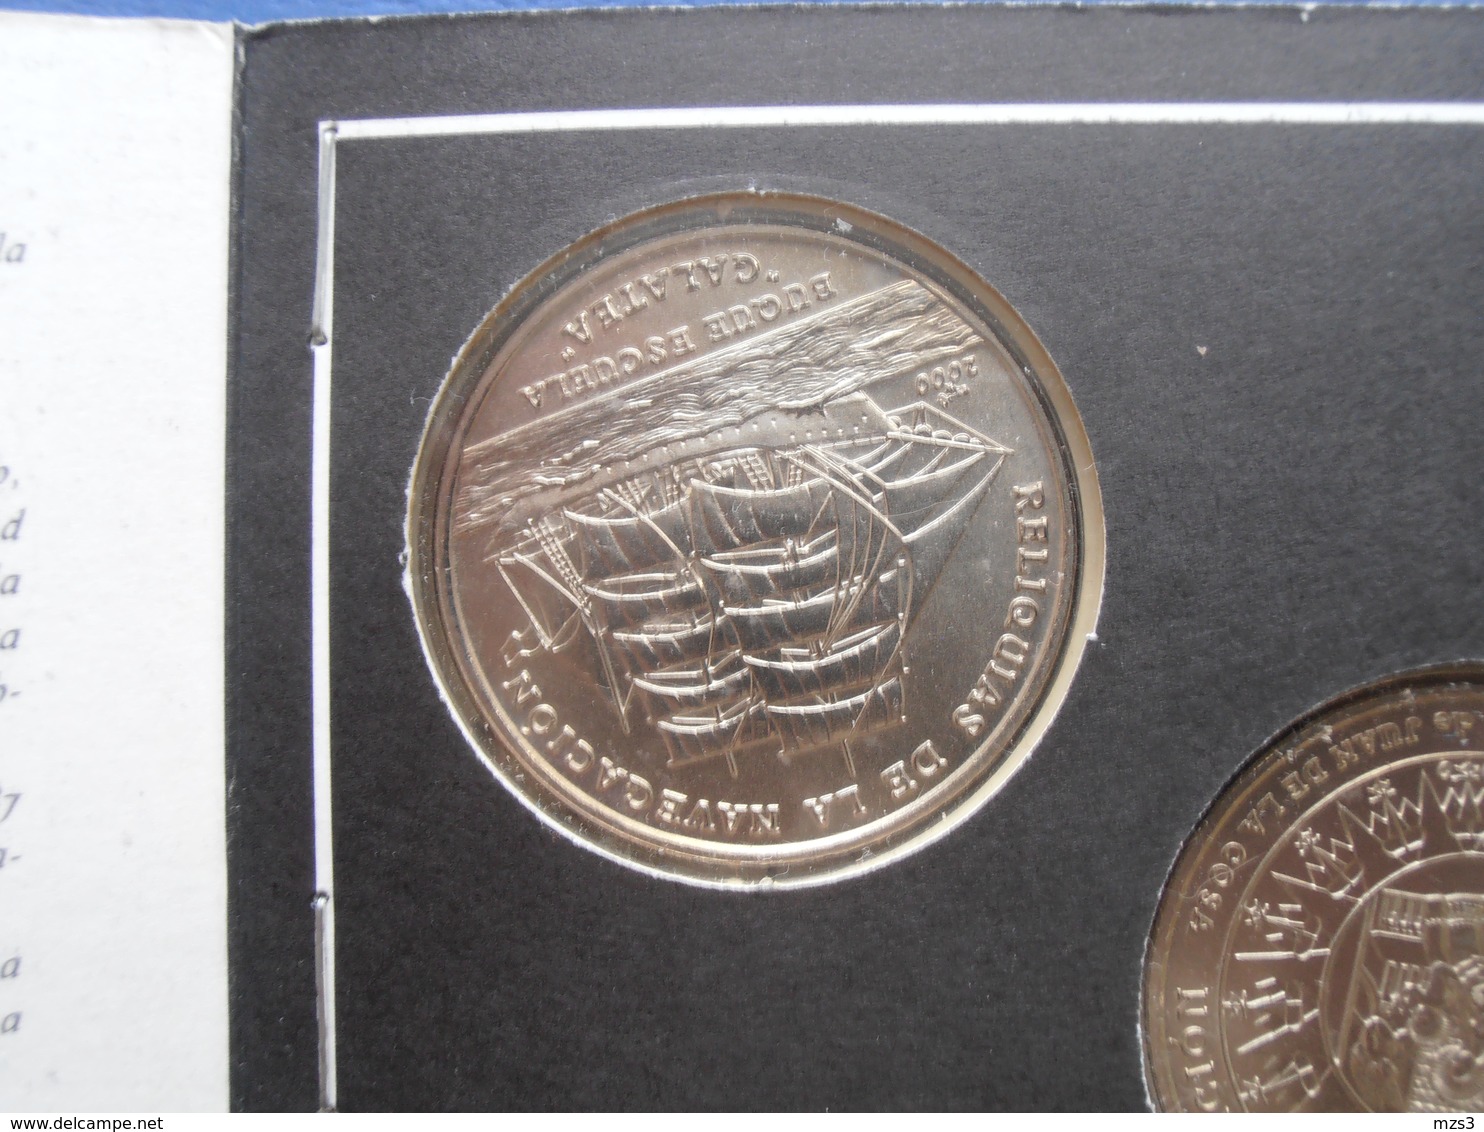 CUBA 5 coins of 1 PESO 2000 "RELIQUIAS DE LA NAVEGATION" BU